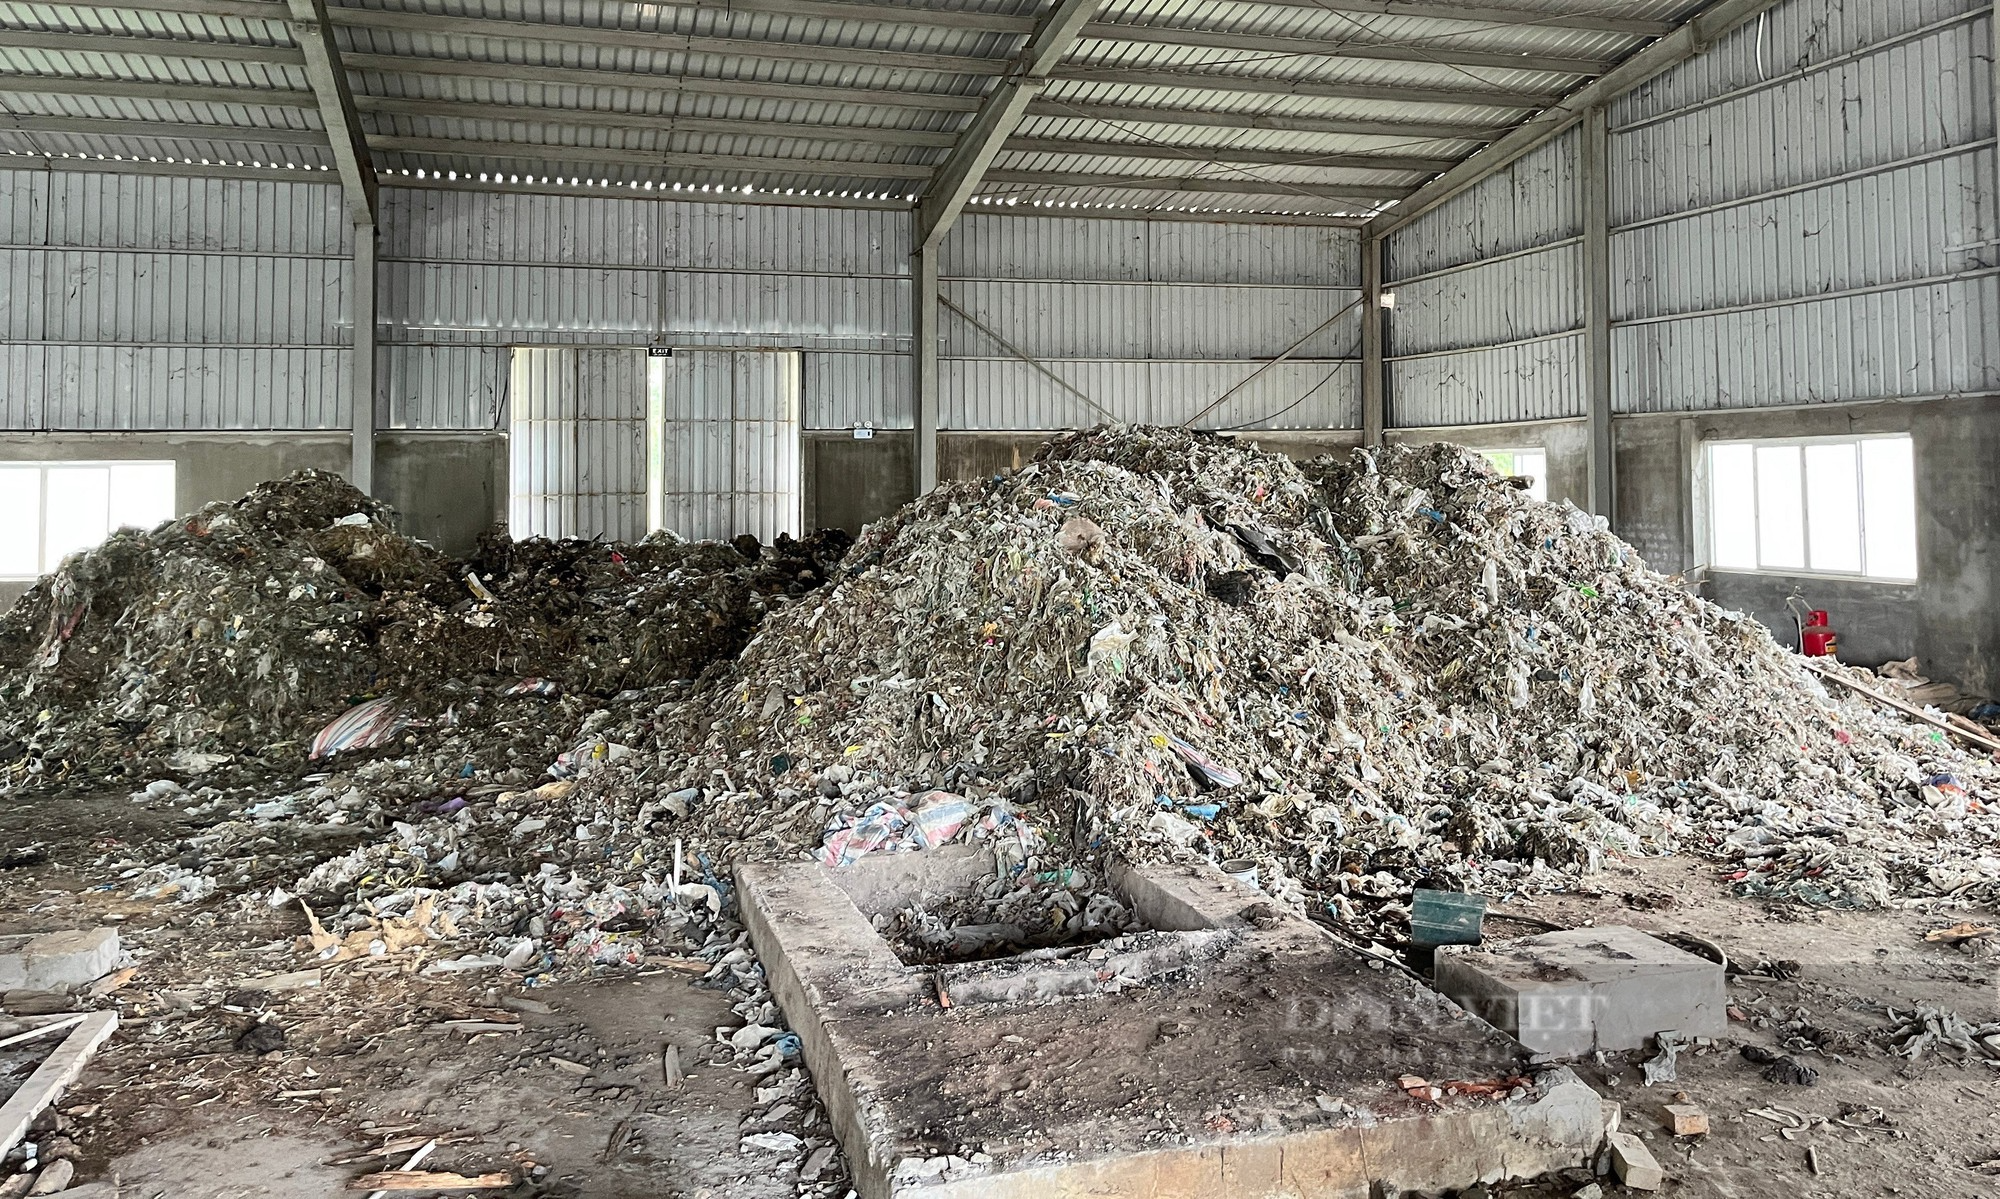 Nhà máy bột giấy hơn 1.200 tỷ hoang tàn sau hơn 10 năm bỏ hoang ở miền Tây Nghệ An - Ảnh 4.